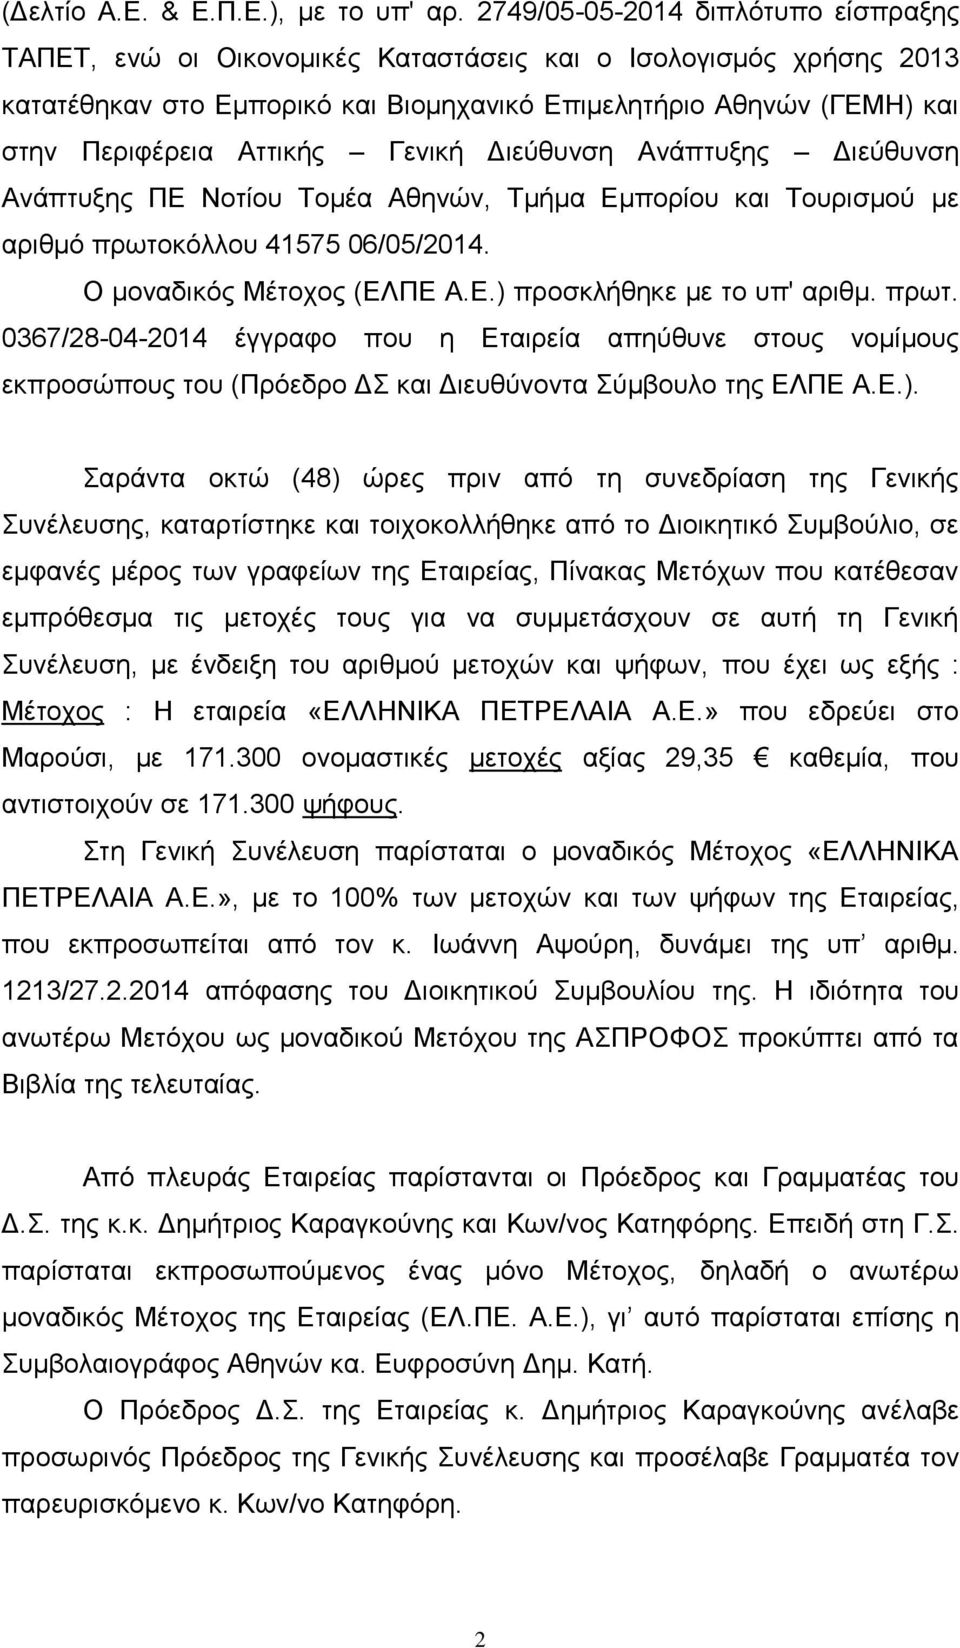 Γενική Διεύθυνση Ανάπτυξης Διεύθυνση Ανάπτυξης ΠΕ Νοτίου Τομέα Αθηνών, Τμήμα Εμπορίου και Τουρισμού με αριθμό πρωτοκόλλου 41575 06/05/2014. Ο μοναδικός Μέτοχος (ΕΛΠΕ Α.Ε.) προσκλήθηκε με το υπ' αριθμ.